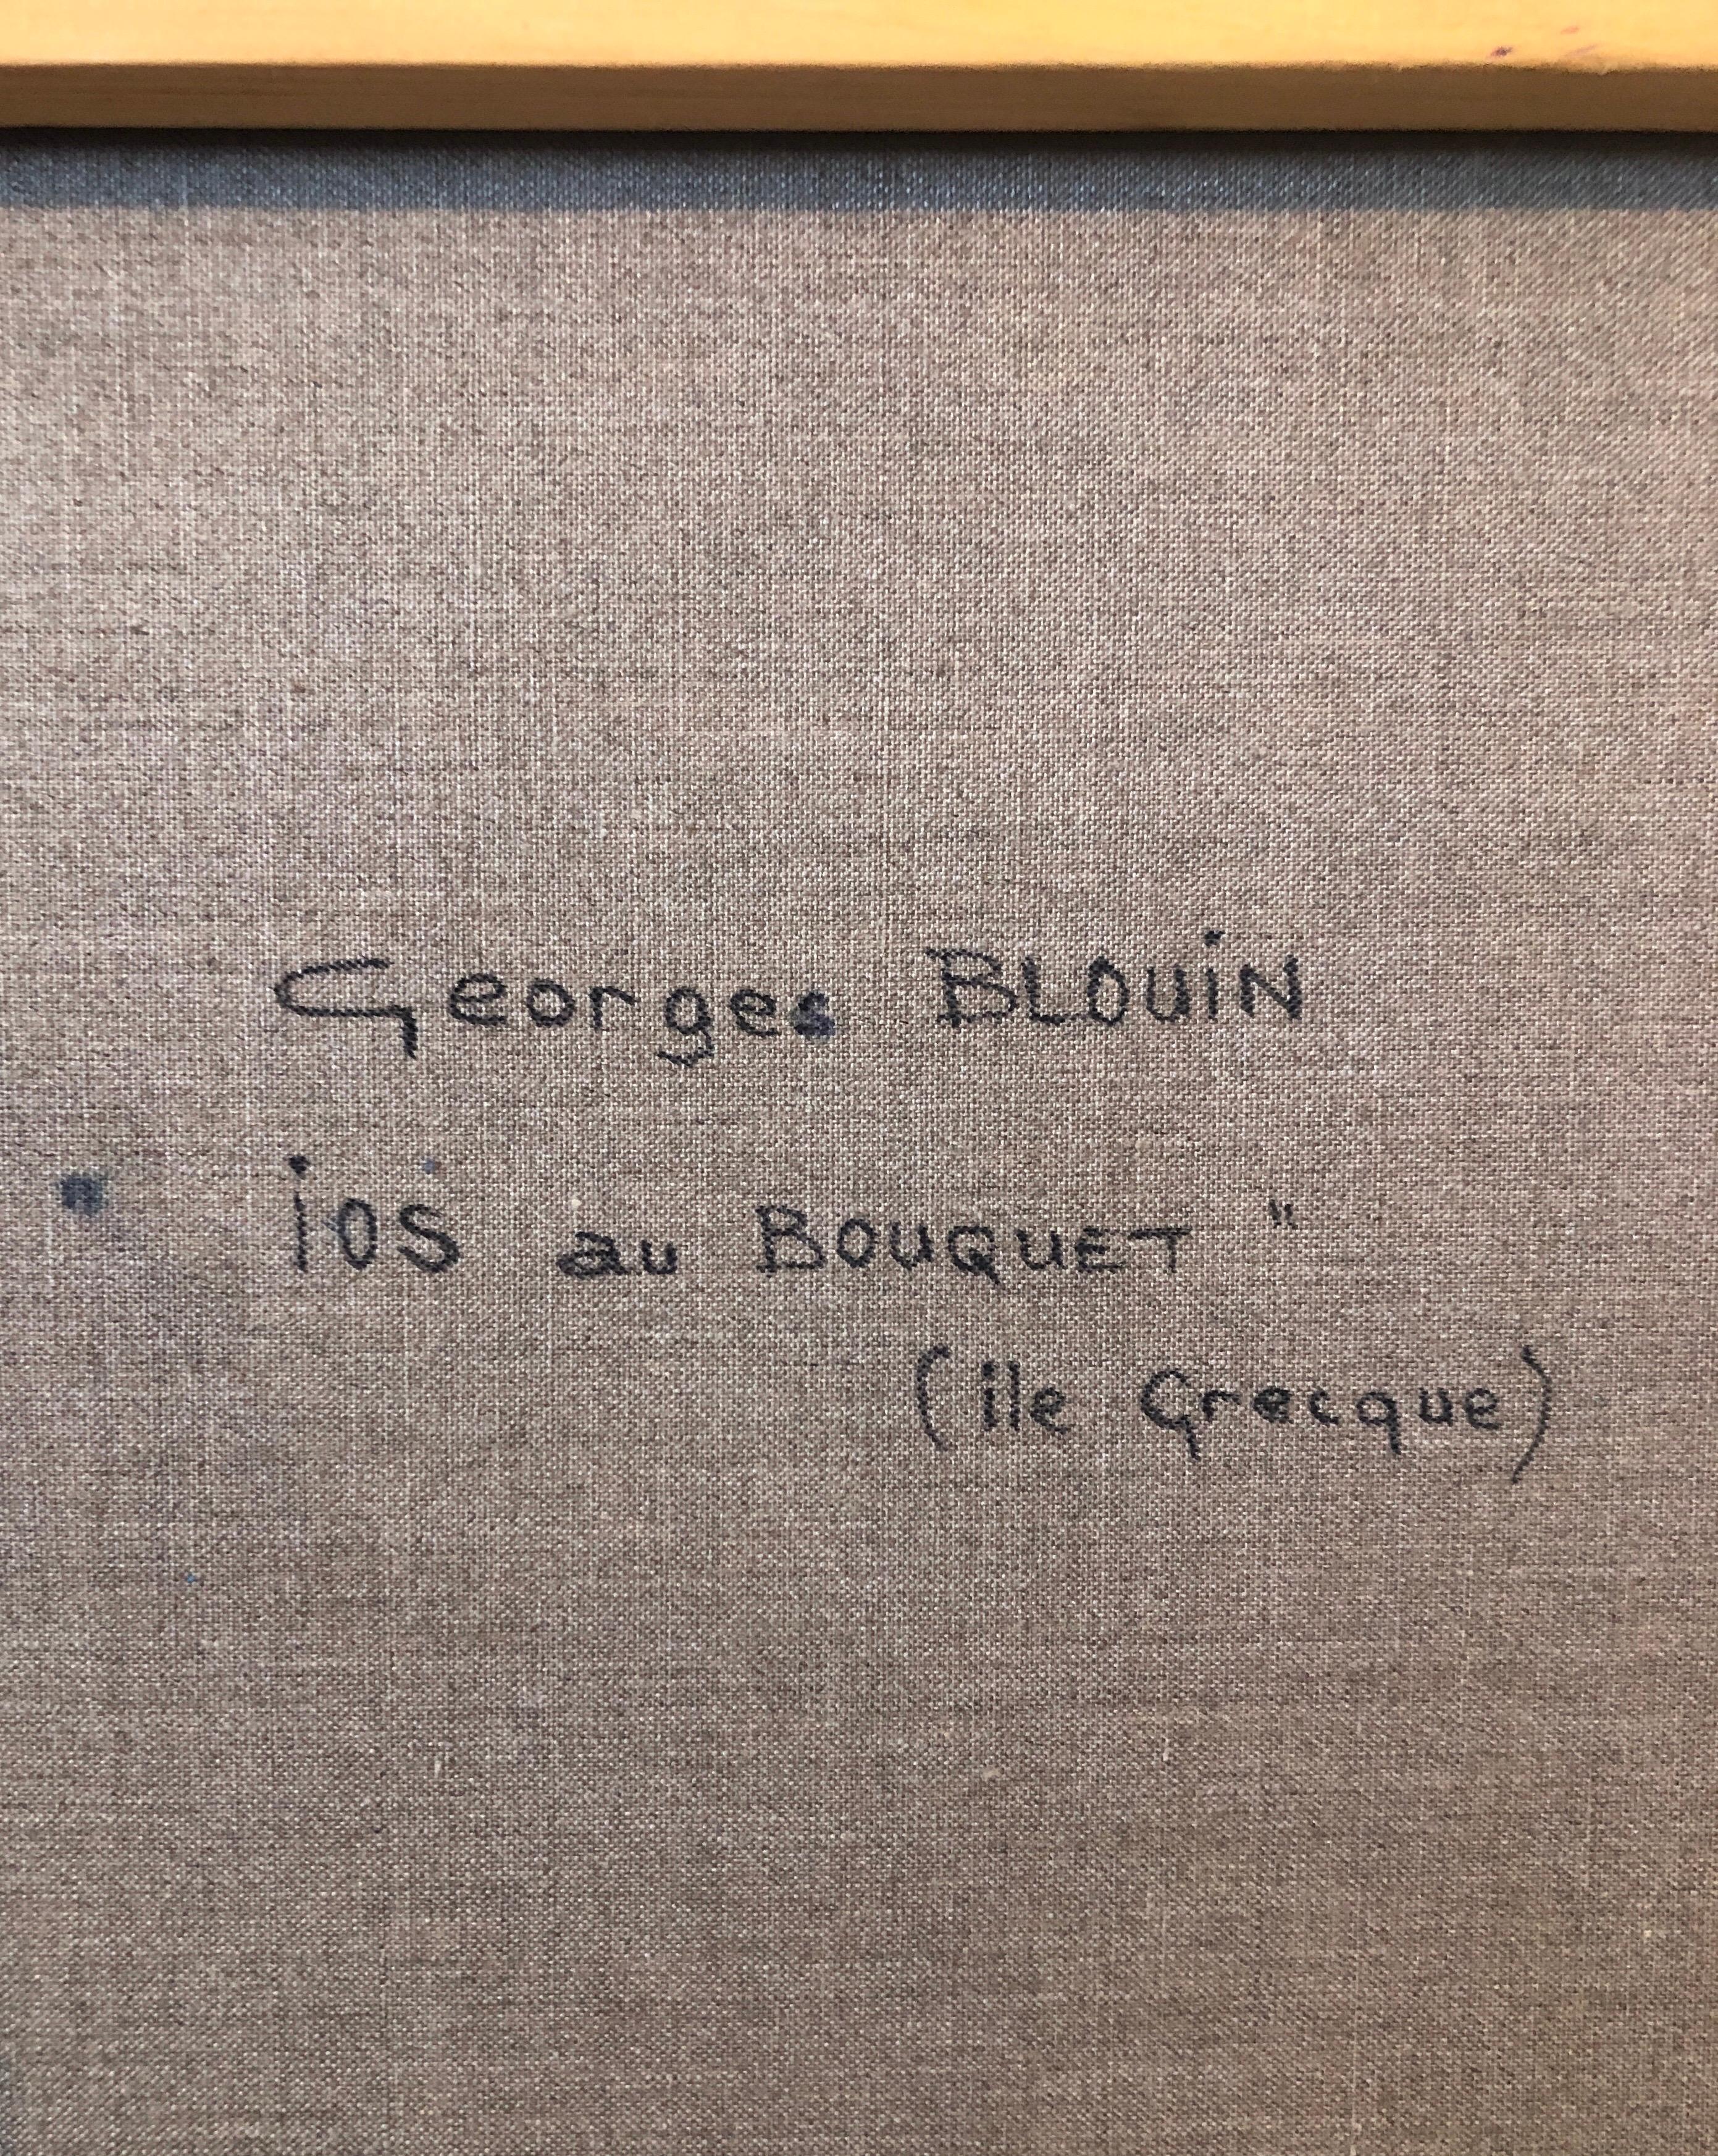 Ios au Bouquet, Ile Grecque

Georges Blouin (1928-2012), geboren in Nordfrankreich. Er besuchte die Ecole des Beaux Arts d'Arras, wo er dekorative Malerei studierte. Georges Blouin war Komitee- und Jurymitglied der 